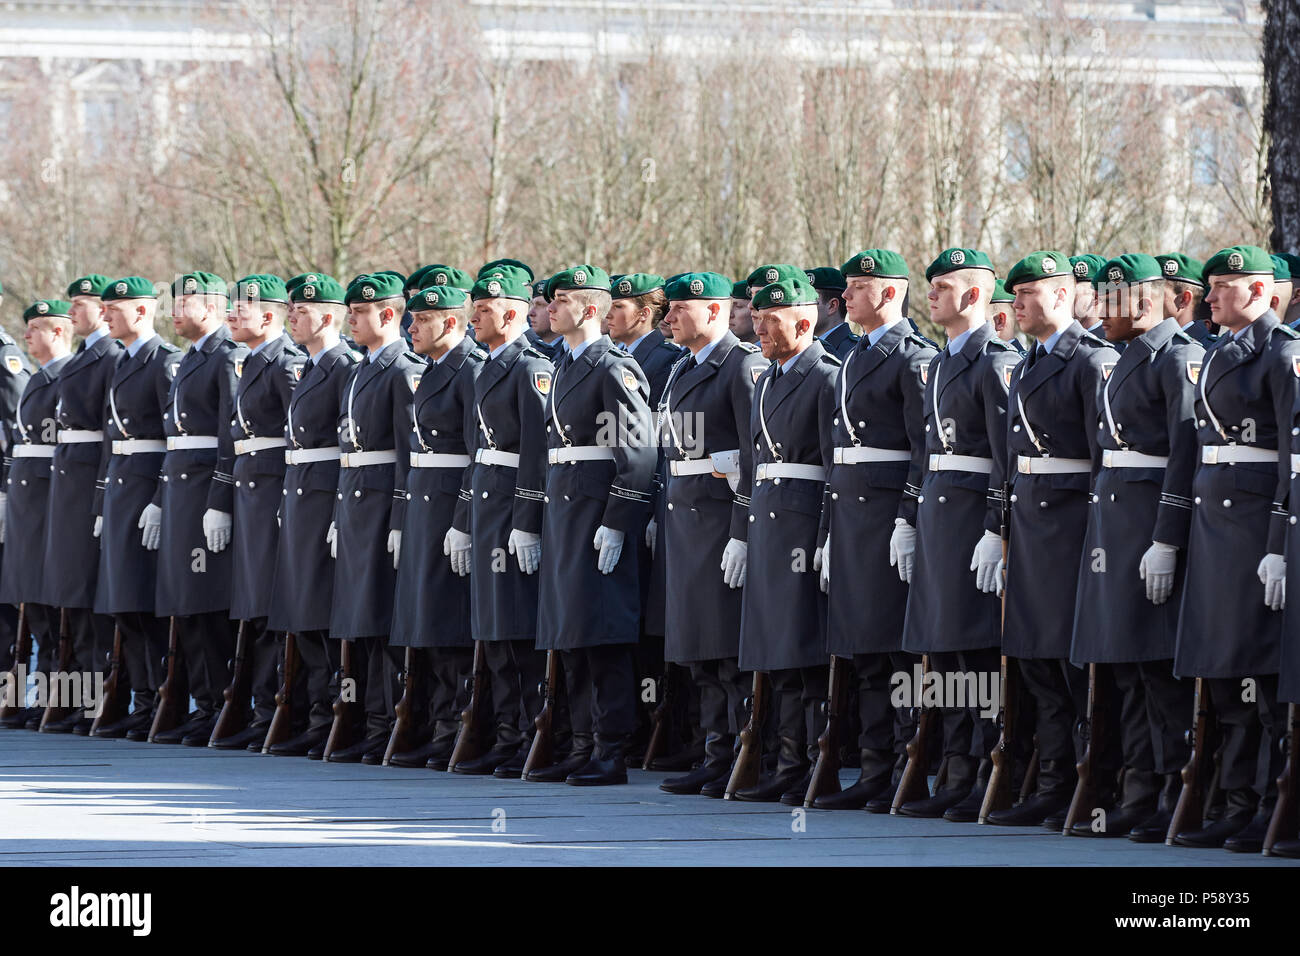 Berlin, Allemagne - Le Bataillon de la Garde se tient dans la cour de la chancellerie fédérale à l'occasion d'une visite d'état. Banque D'Images